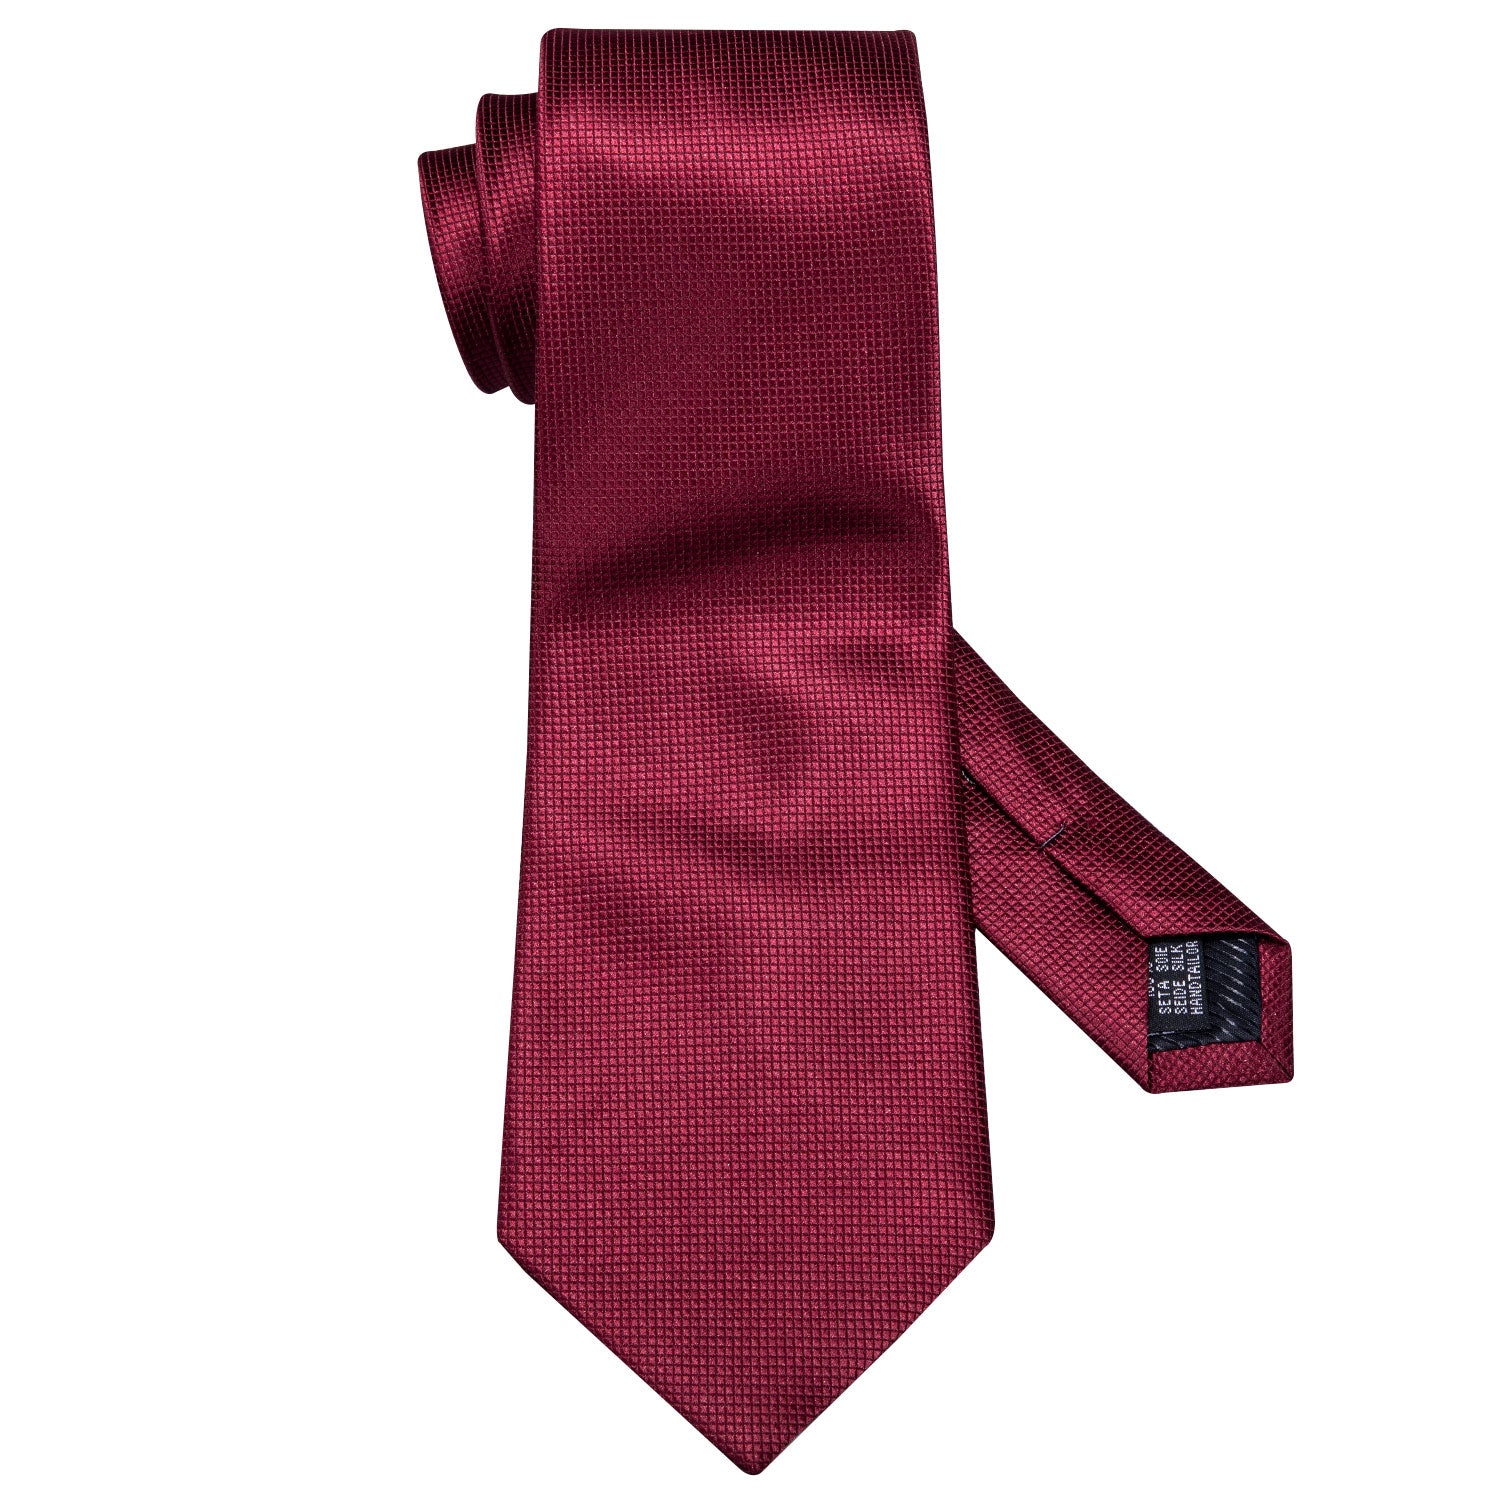 Red Solid Silk Men's Tie Pocket Square Cufflinks Set